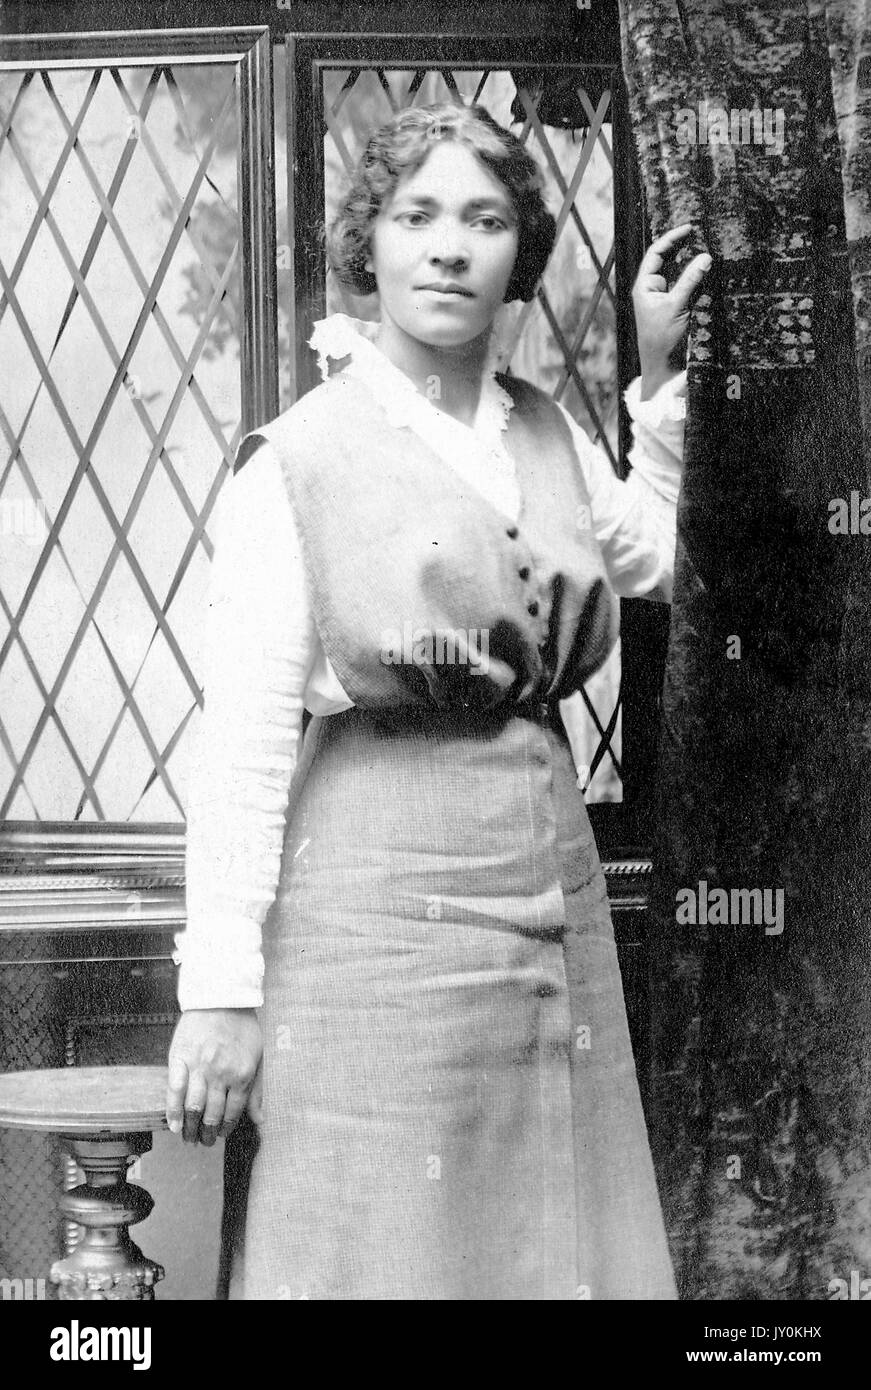 Drei Viertel lang stehend Porträt der jungen afroamerikanischen Frau, tragen dunkle Kleid über helle Bluse, vor dem Fenster neben stehen, während Vorhang halten, neutral Ausdruck, 1920. Stockfoto